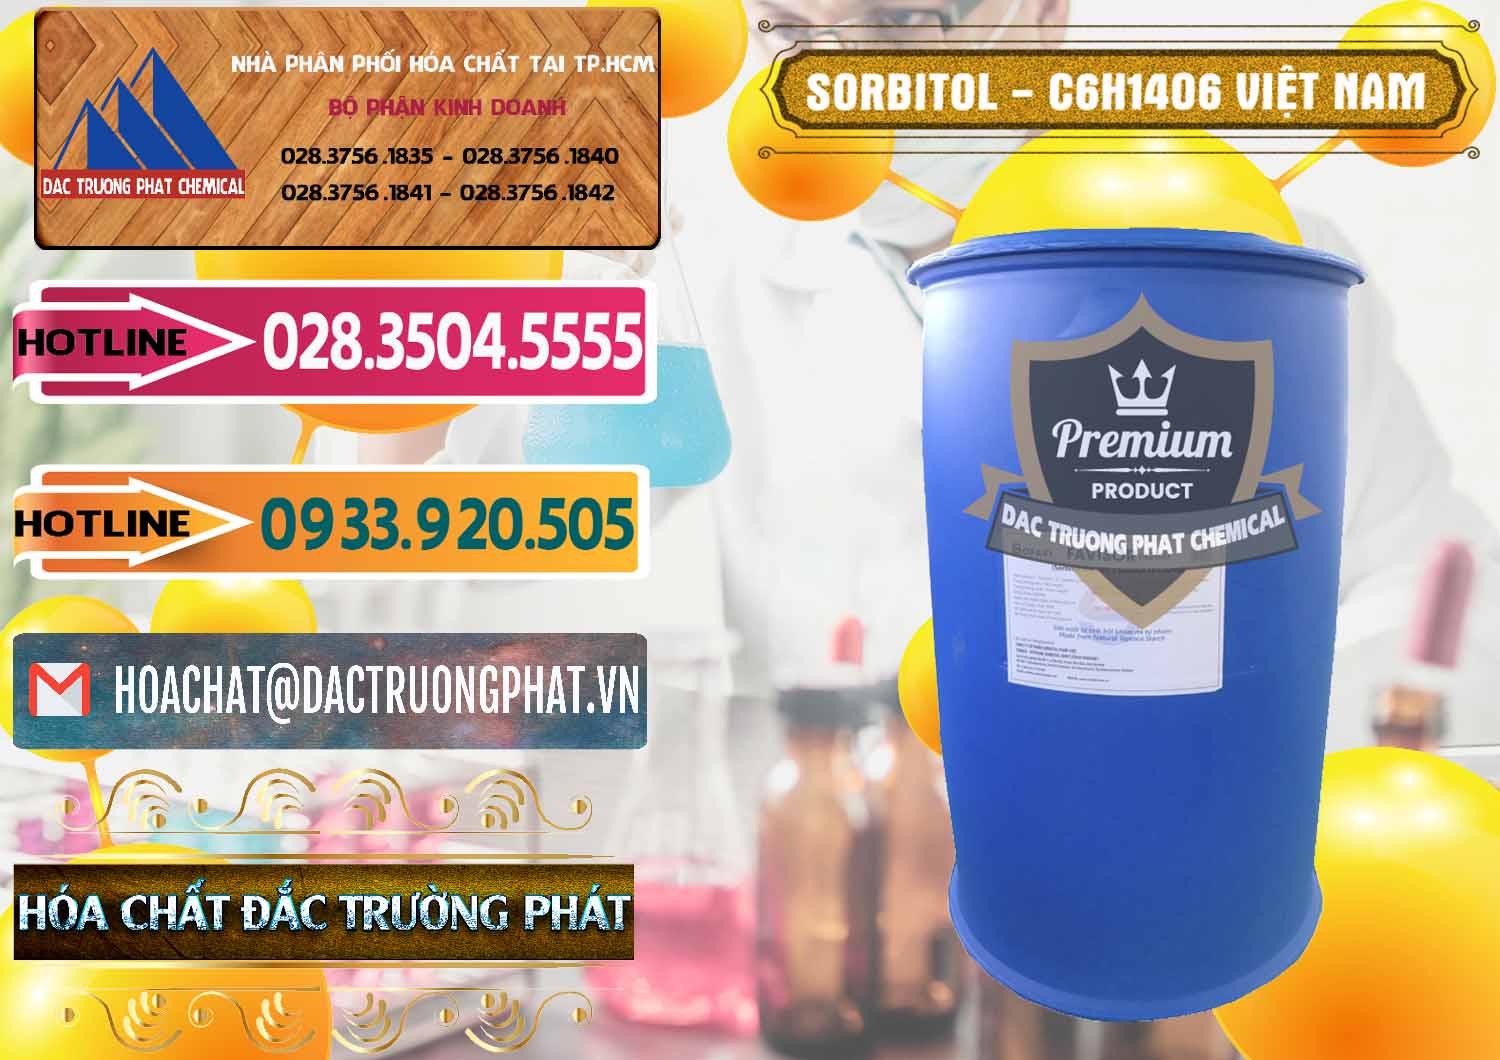 Cty chuyên bán và cung cấp Sorbitol - C6H14O6 Lỏng 70% Food Grade Việt Nam - 0438 - Kinh doanh ( cung cấp ) hóa chất tại TP.HCM - dactruongphat.vn